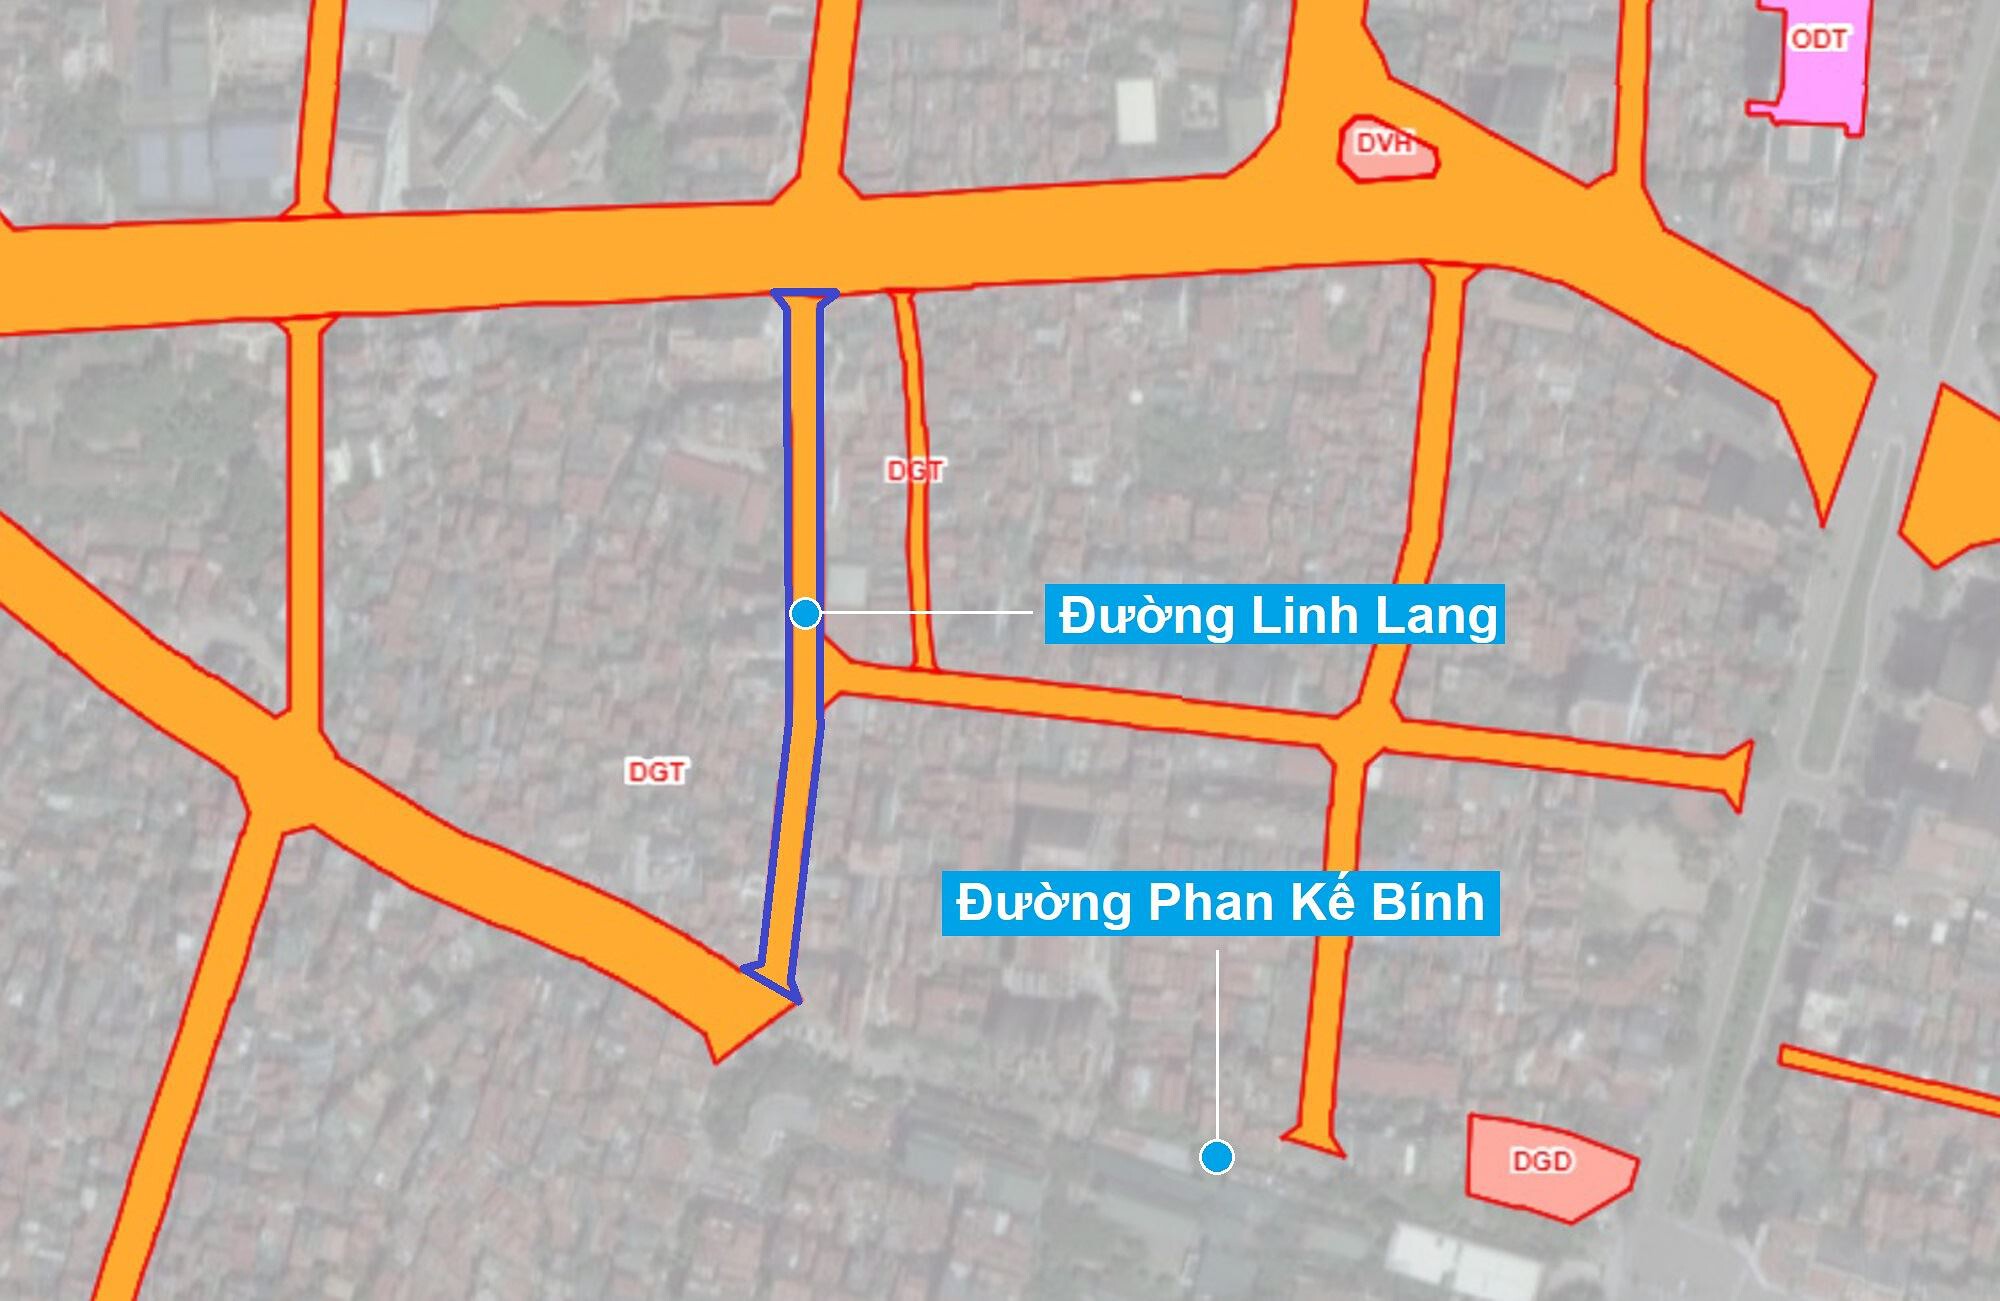 Sơ đồ khu đất sắp thu hồi mở đường ở phường Cống Vị. (Nguồn ảnh: Bản đồ sử dụng đất TP Hà Nội năm 2020).